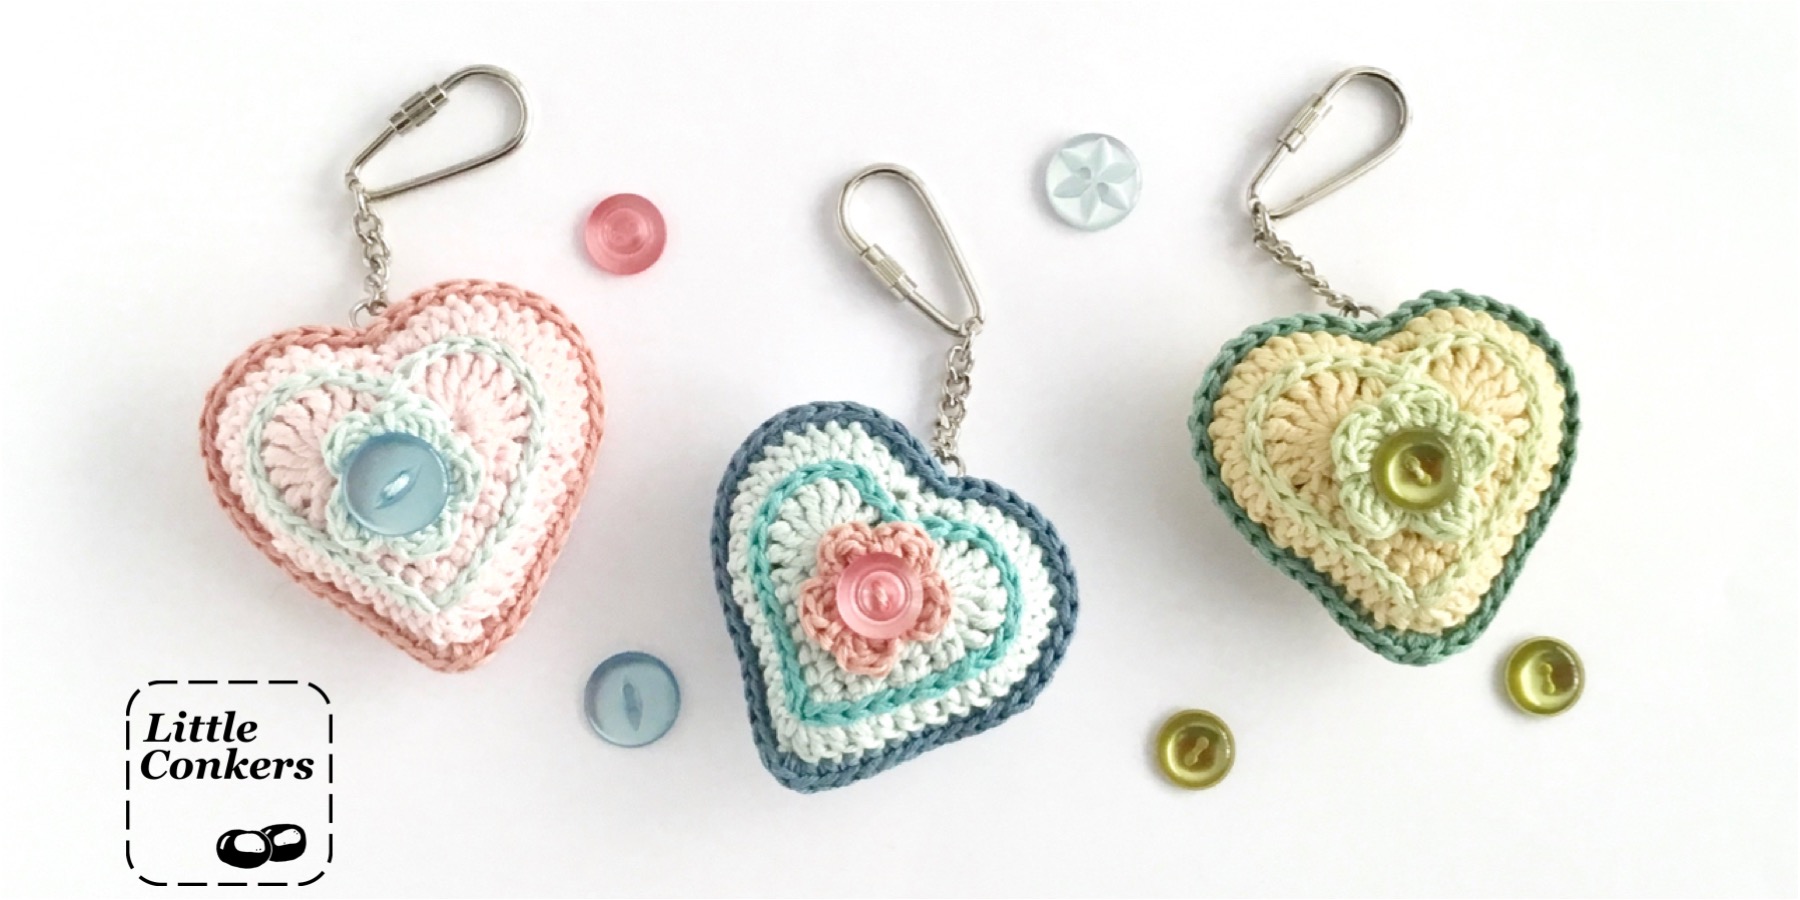 Crocheted heart keyrings